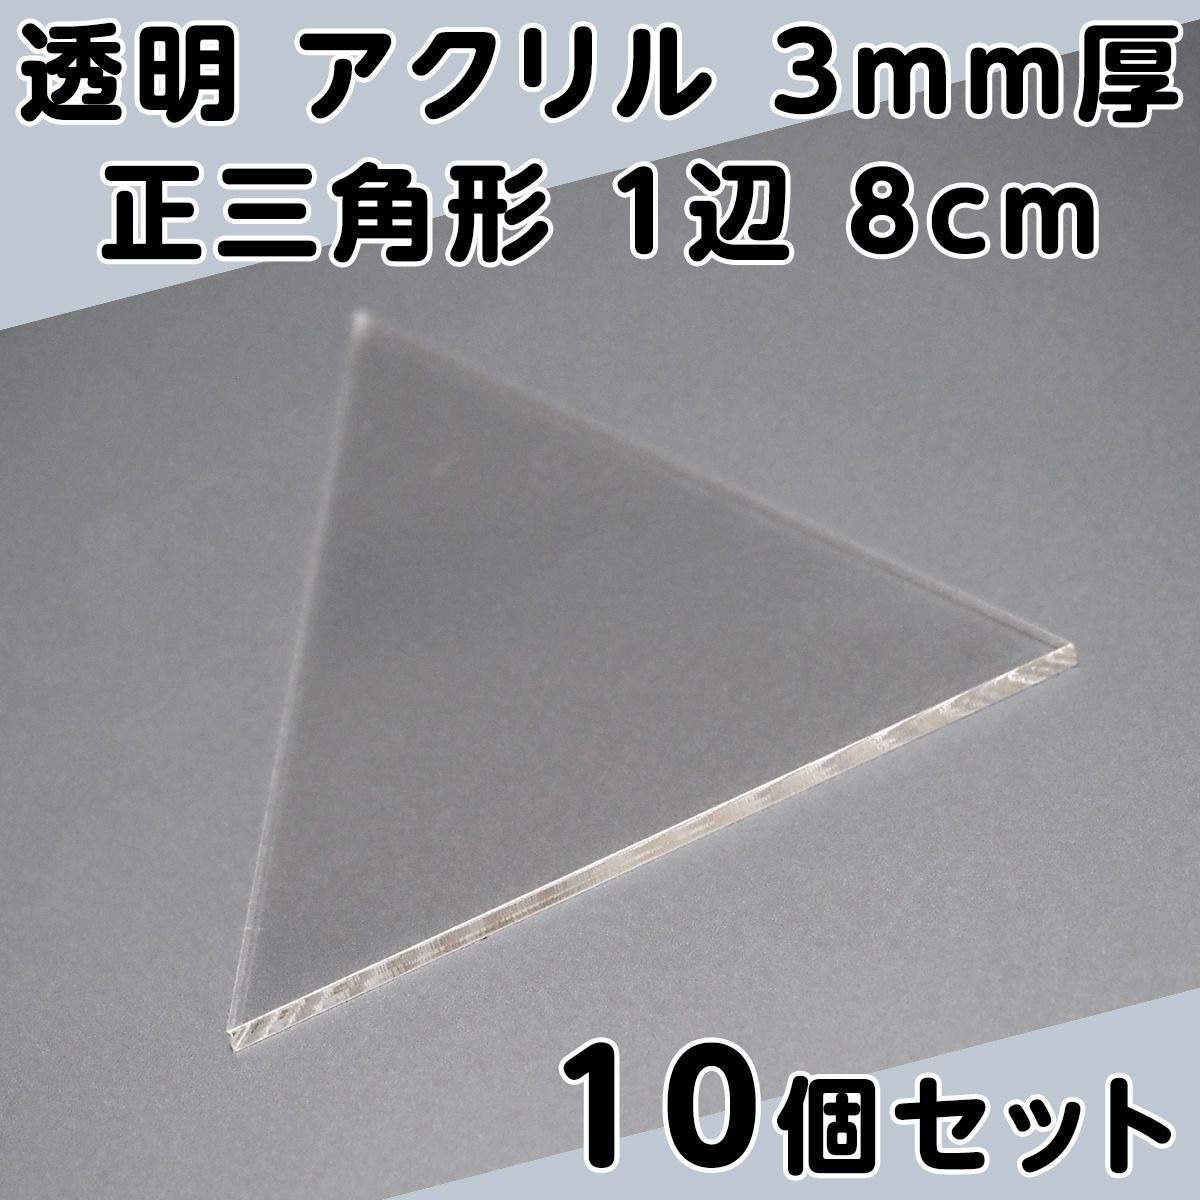 透明 アクリル 3mm厚 正三角形 1辺 8cm 10個セット - メルカリ